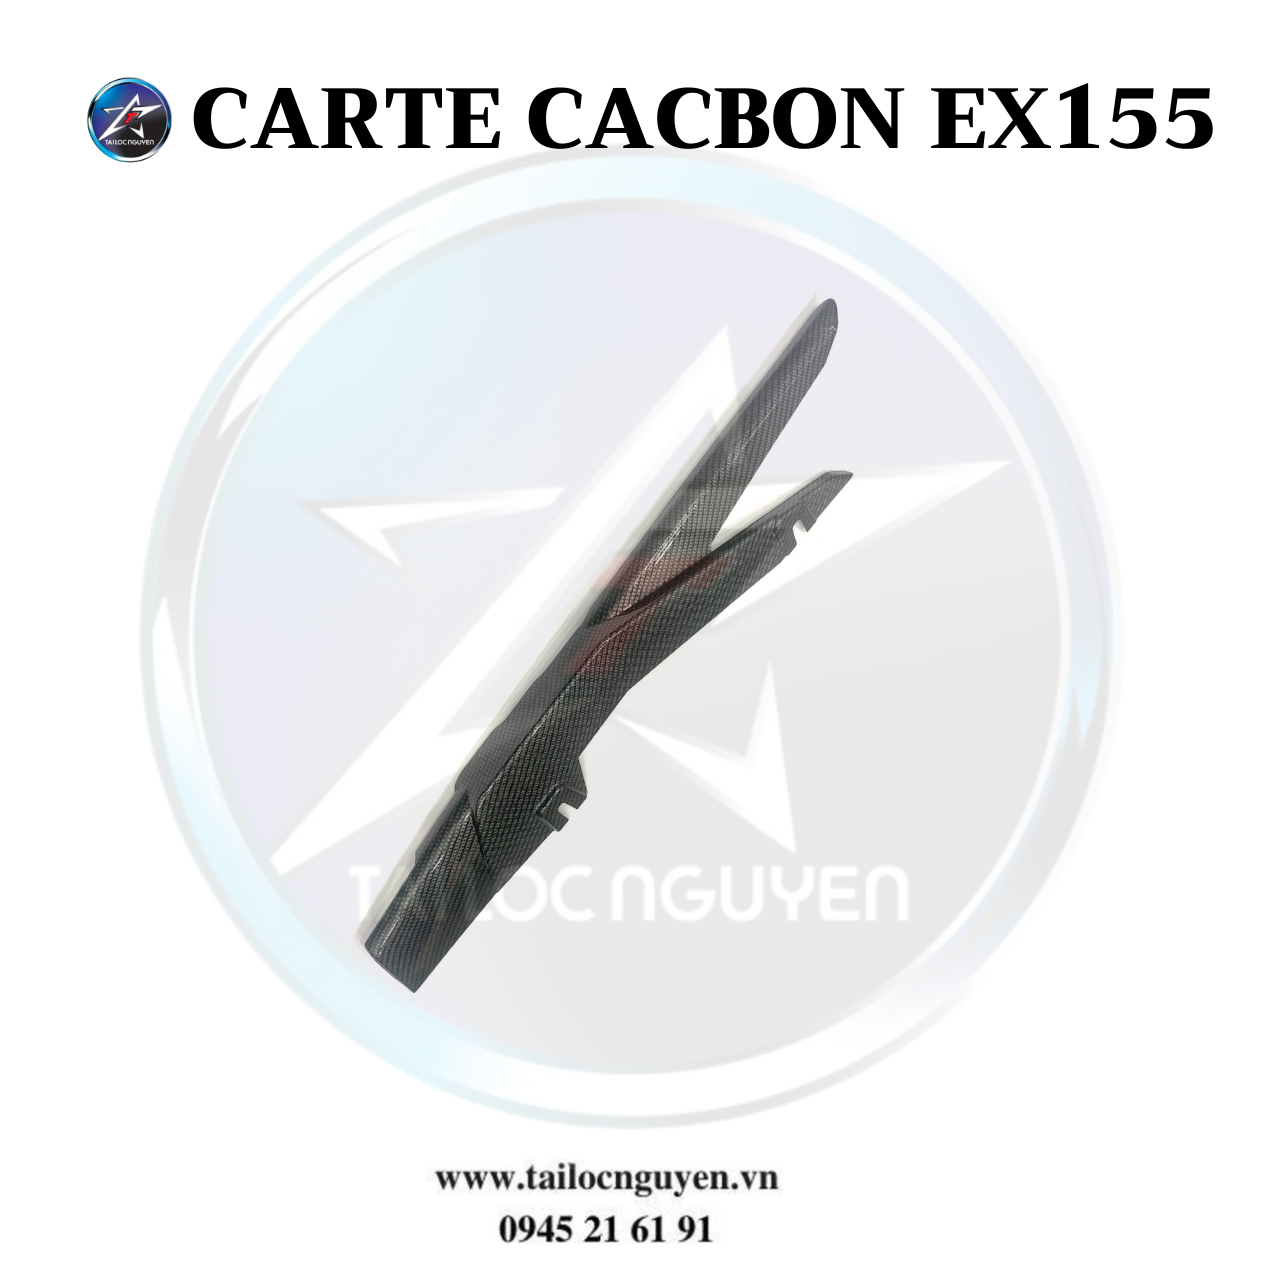 CARTE CACBON EX155(5)